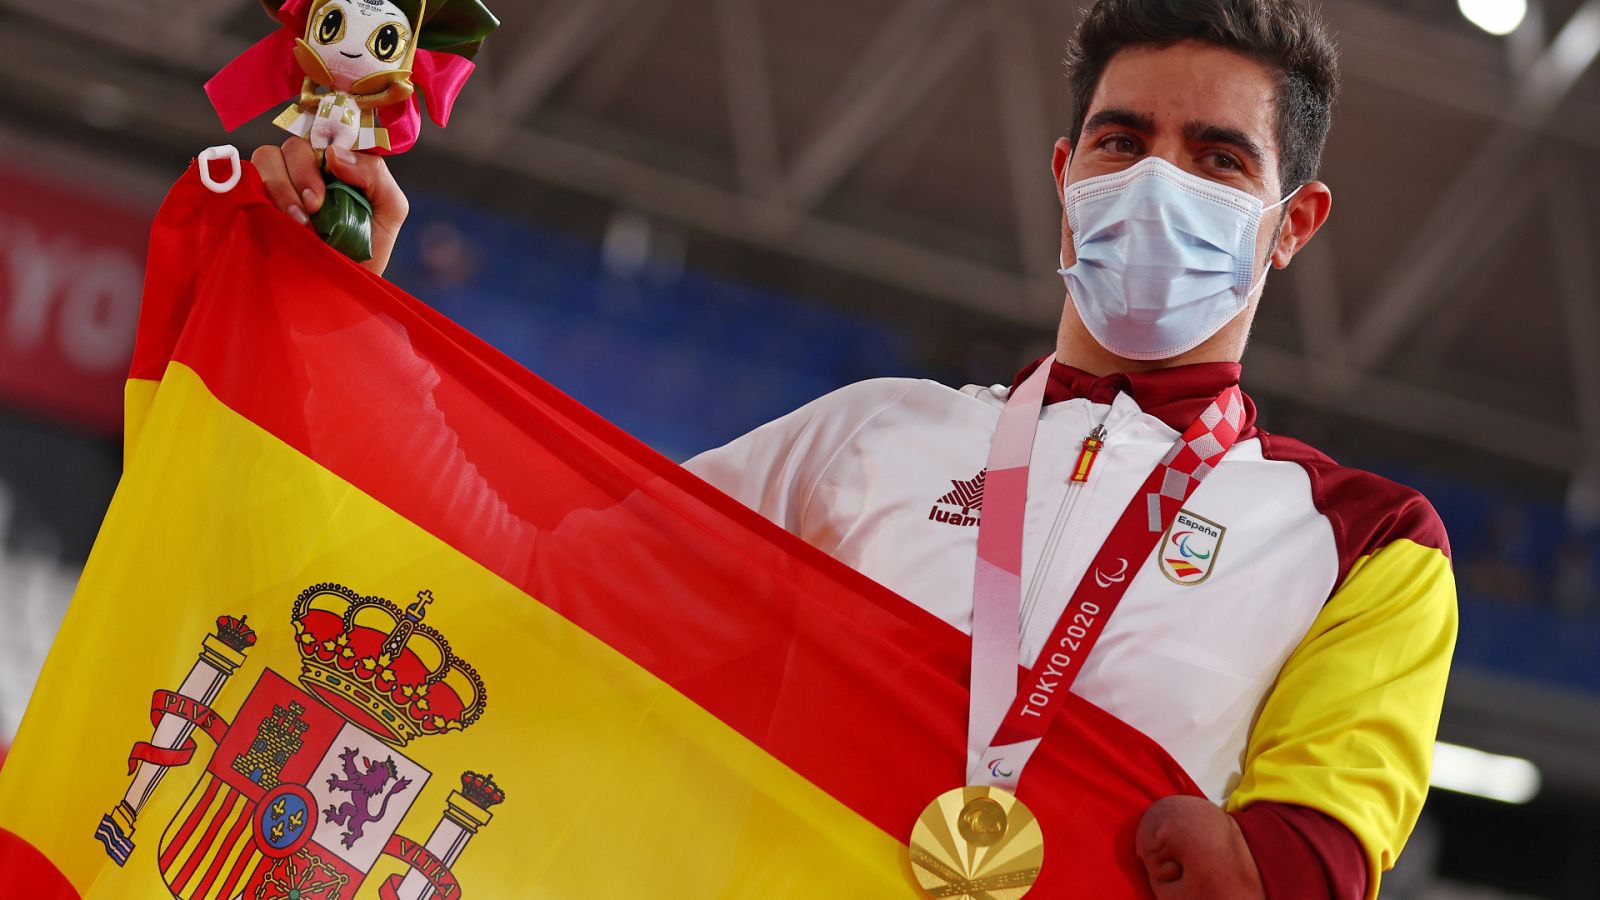 Alfonso Cabello recibe la medalla de oro y el himno de España suena por primera vez - ver ahora